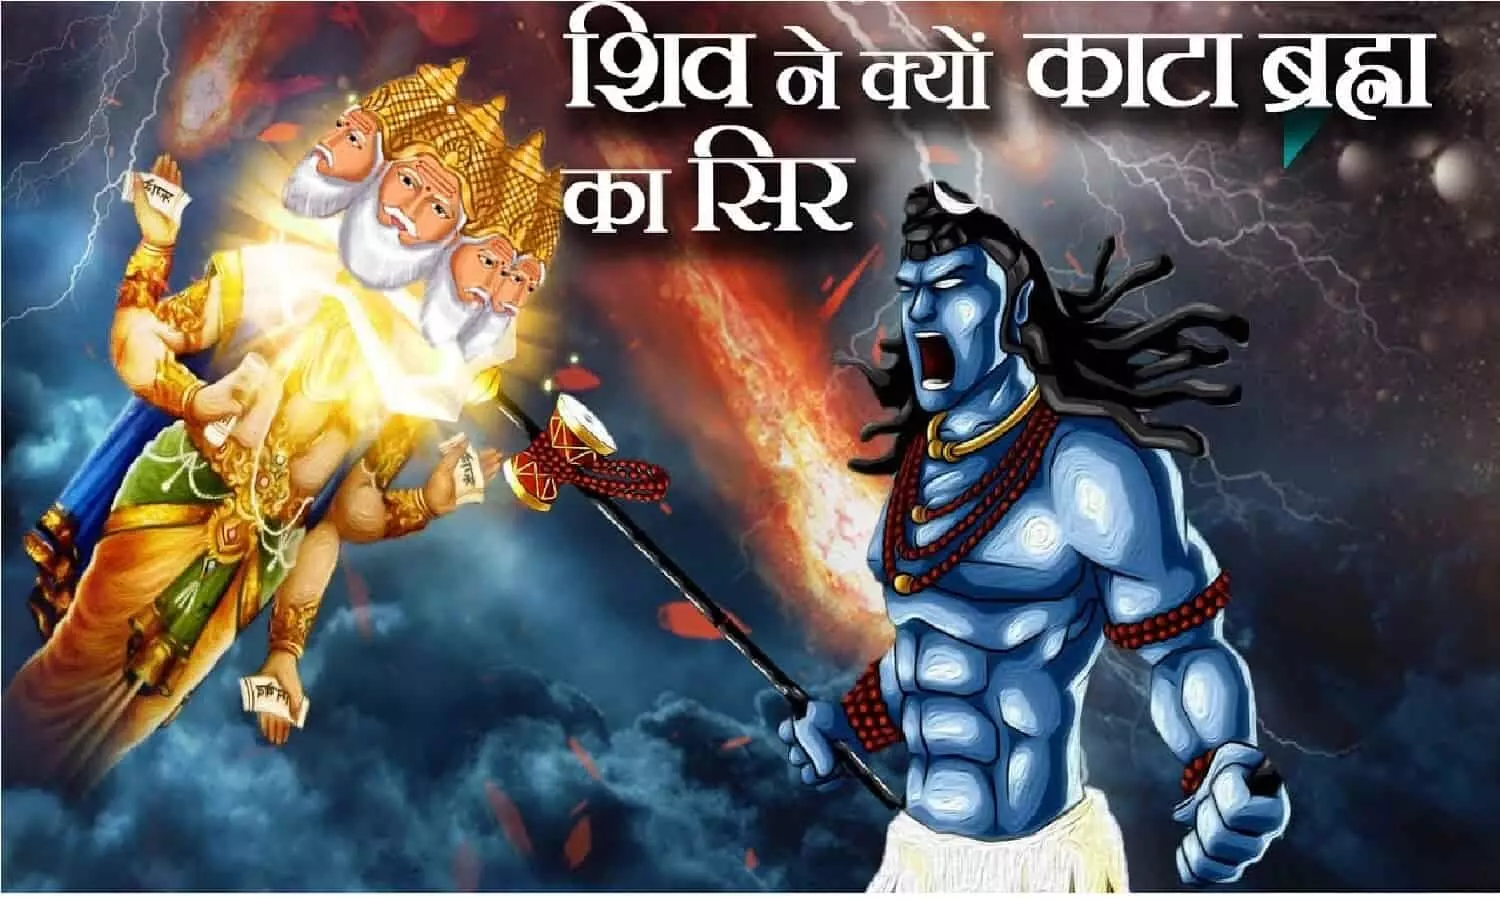 Mahashivratri 2022: जब भगवान विष्णु और ब्रह्मा जी में हुई लड़ाई, तो गुस्से में आकर शिवजी ने काट दिया था ब्रह्मा जी का गला, जानिए!